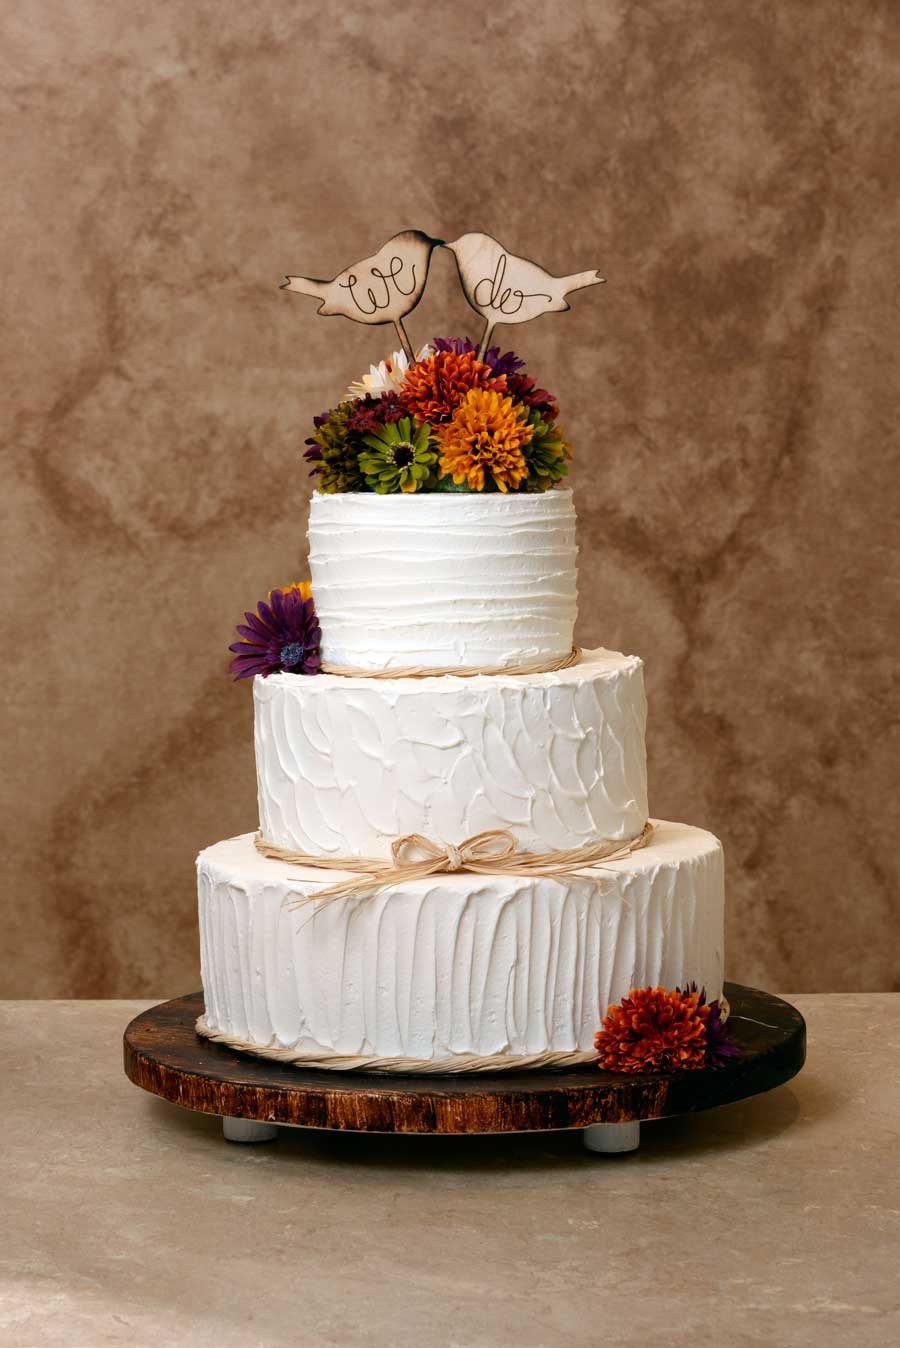 Wedding Cakes Images 2015
 Wedding Cakes